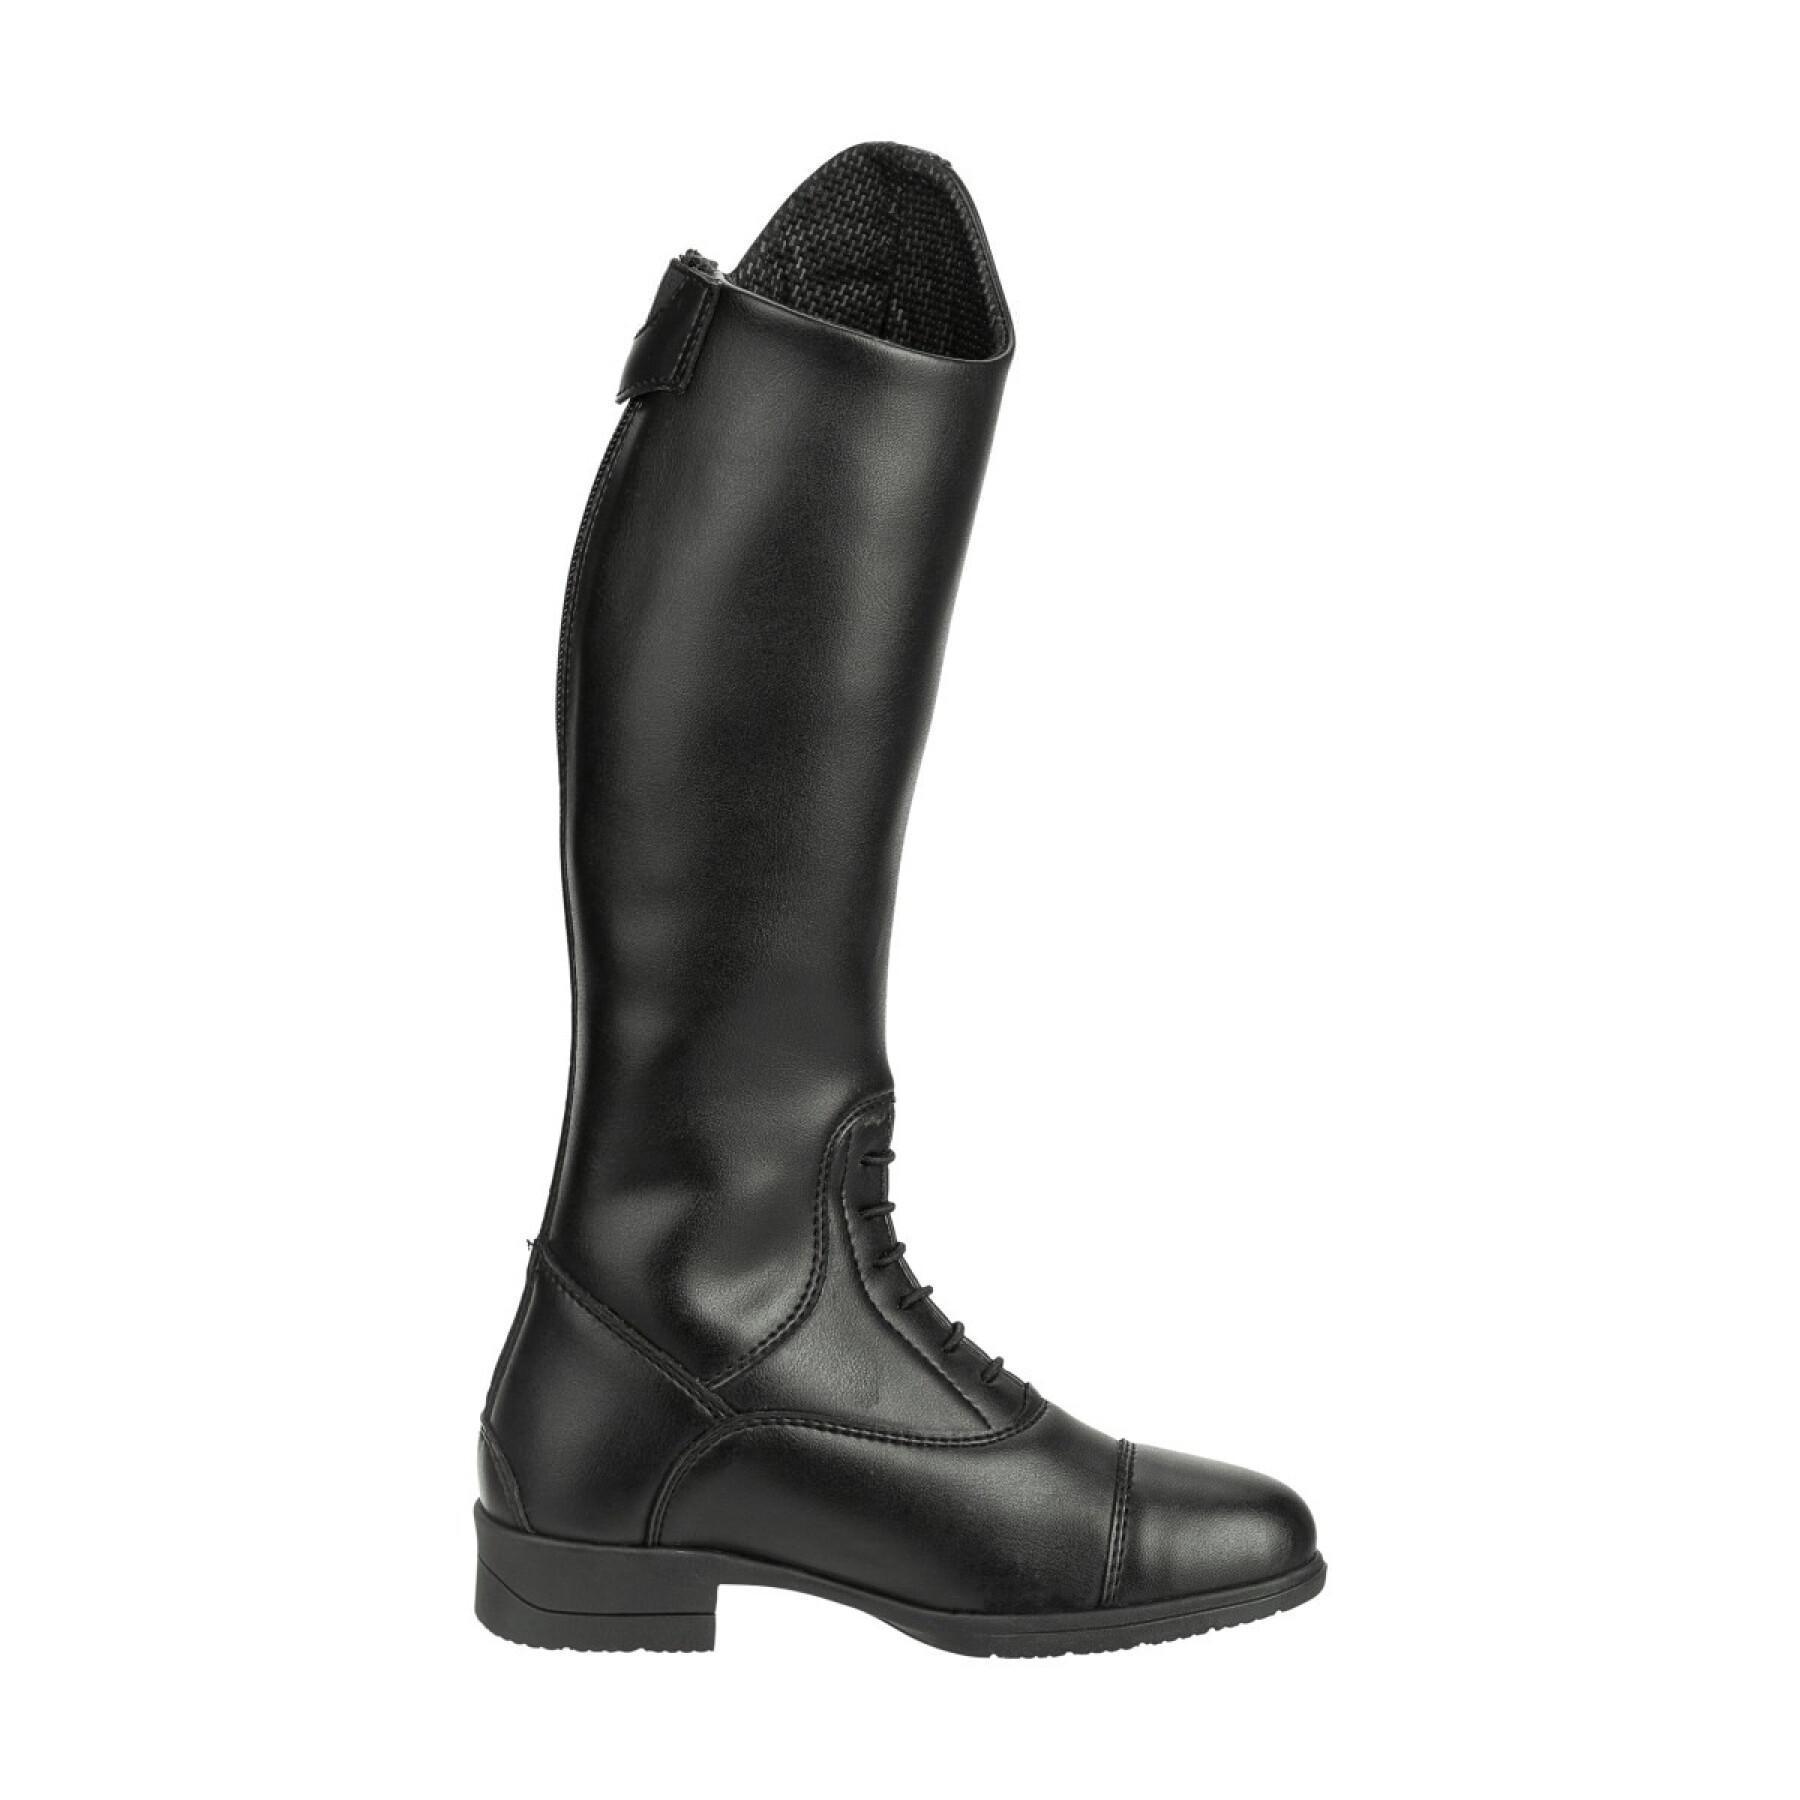 Women's leather riding boots Suedwind Footwear Nova Fun